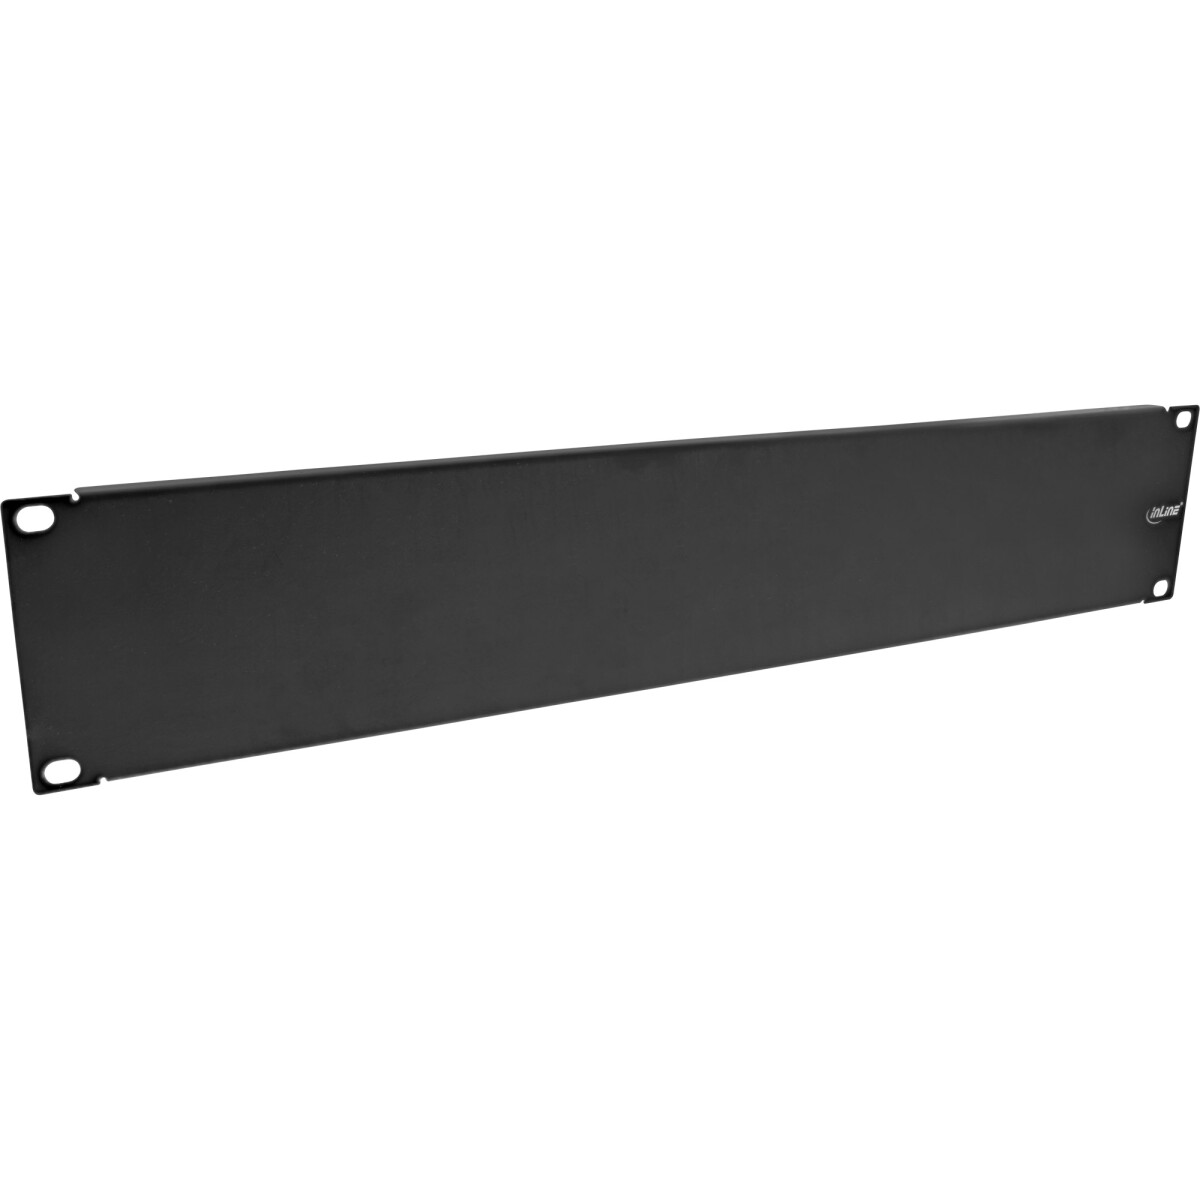 InLine® 19" blind panel, RAL 9005 black, 3U